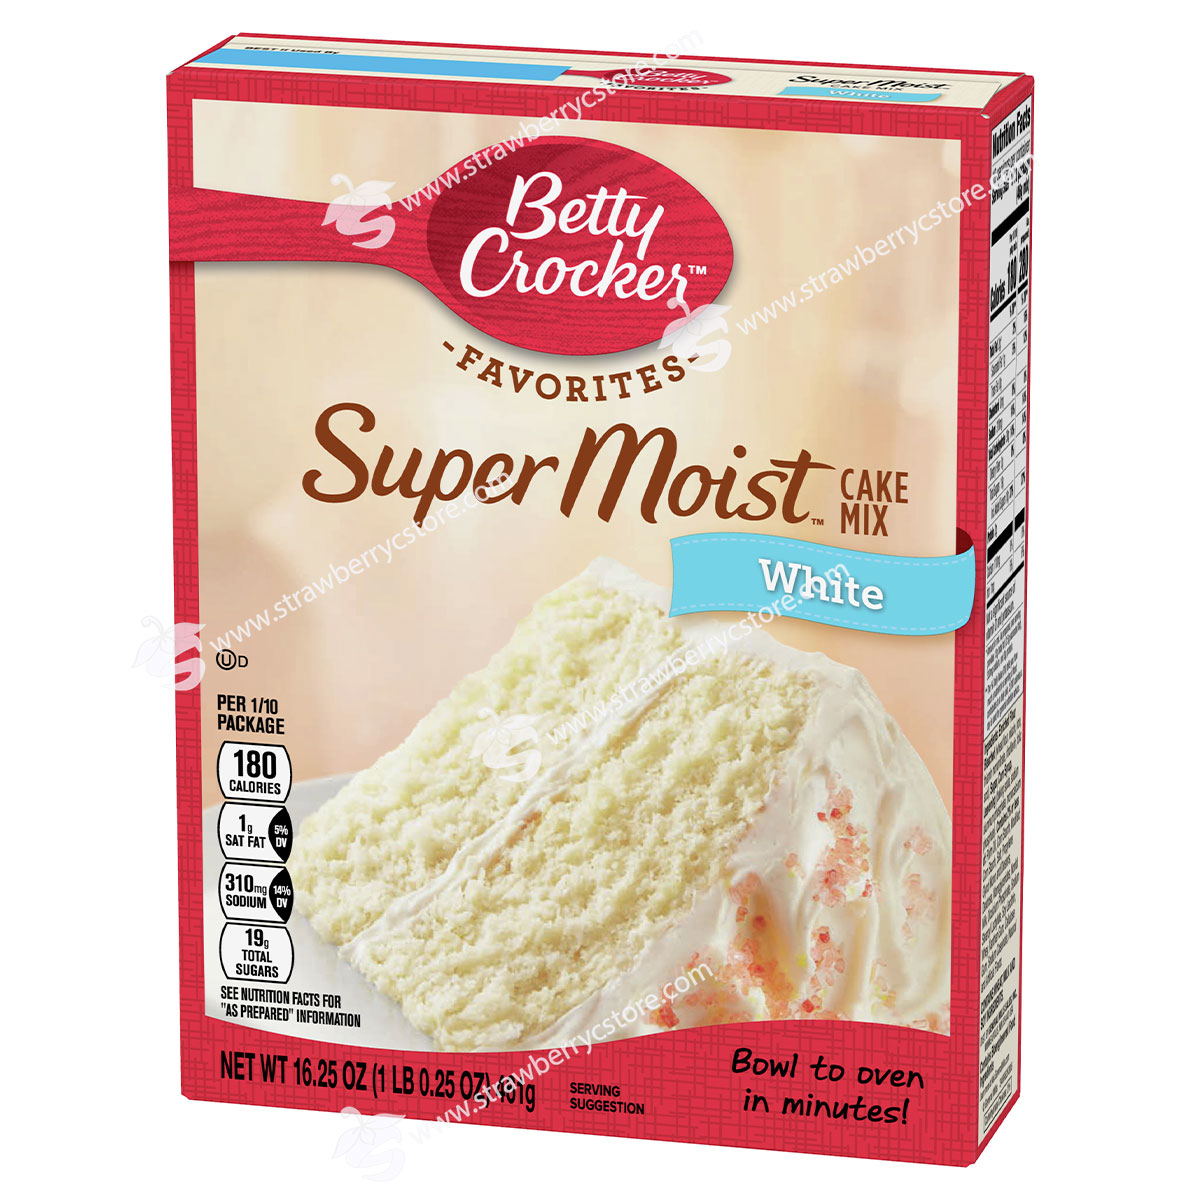 Bột làm bánh pha sẵn betty crocker super moist cake mix, hộp 432g 15.25 oz. - ảnh sản phẩm 9